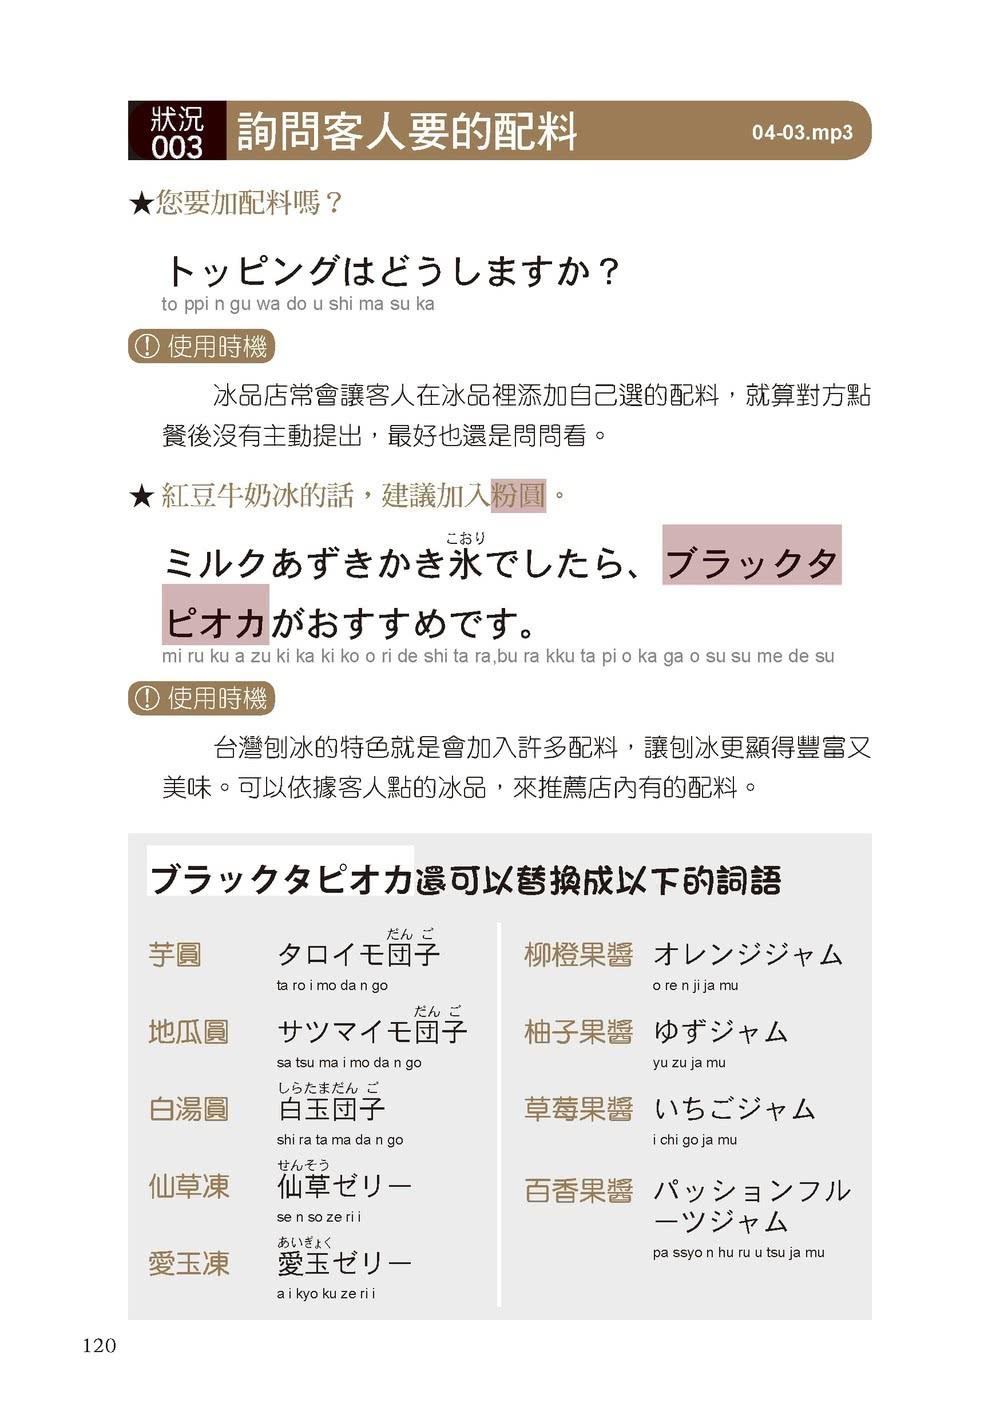 服務業日語【QR碼行動學習版】：套用、替換、零失誤！第一線人員最實用 100%提高業績的全方位日本語應對指